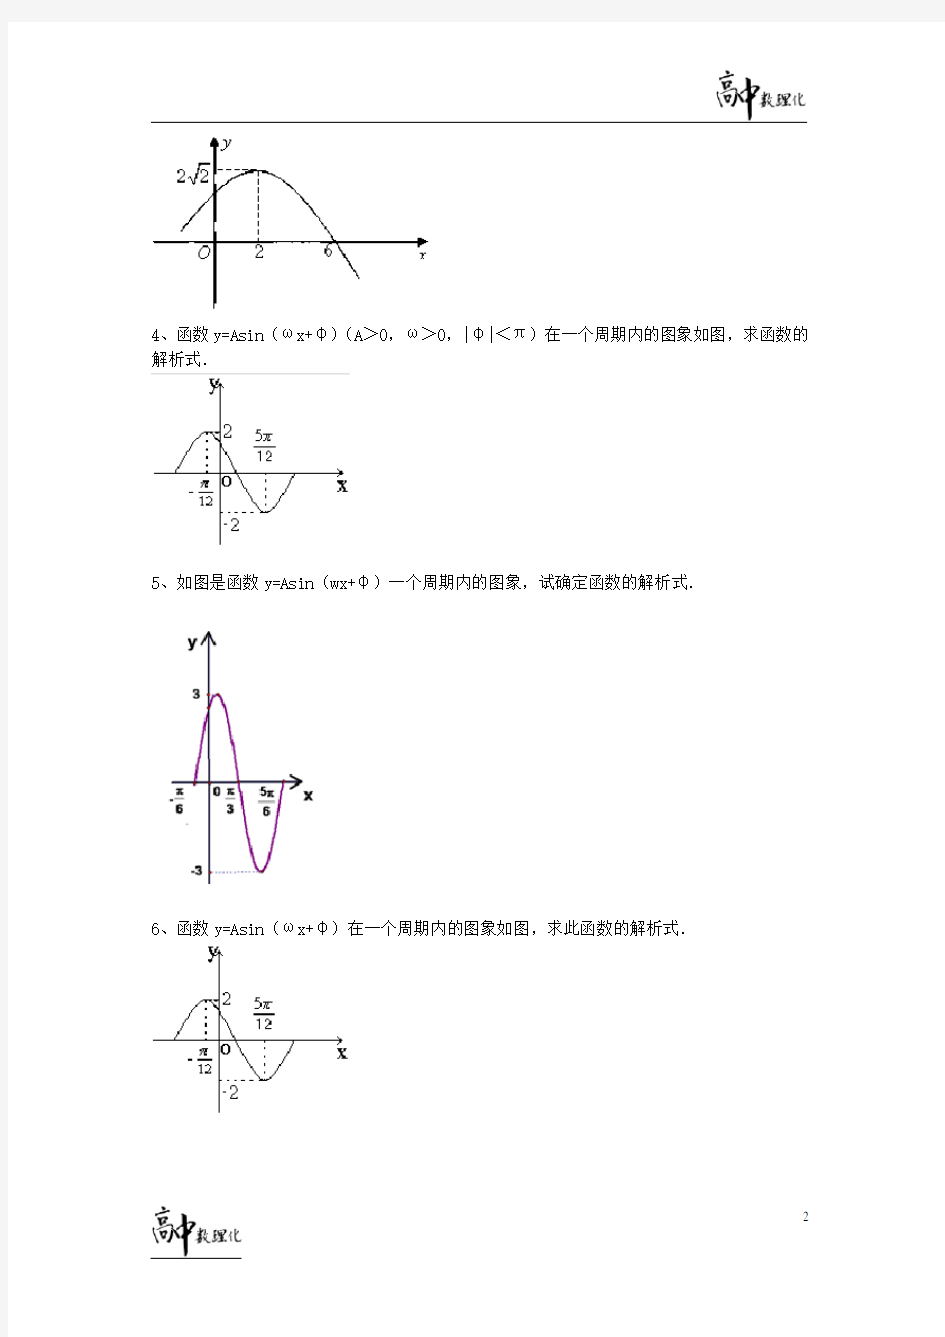 题型-三角函数看图求解析式